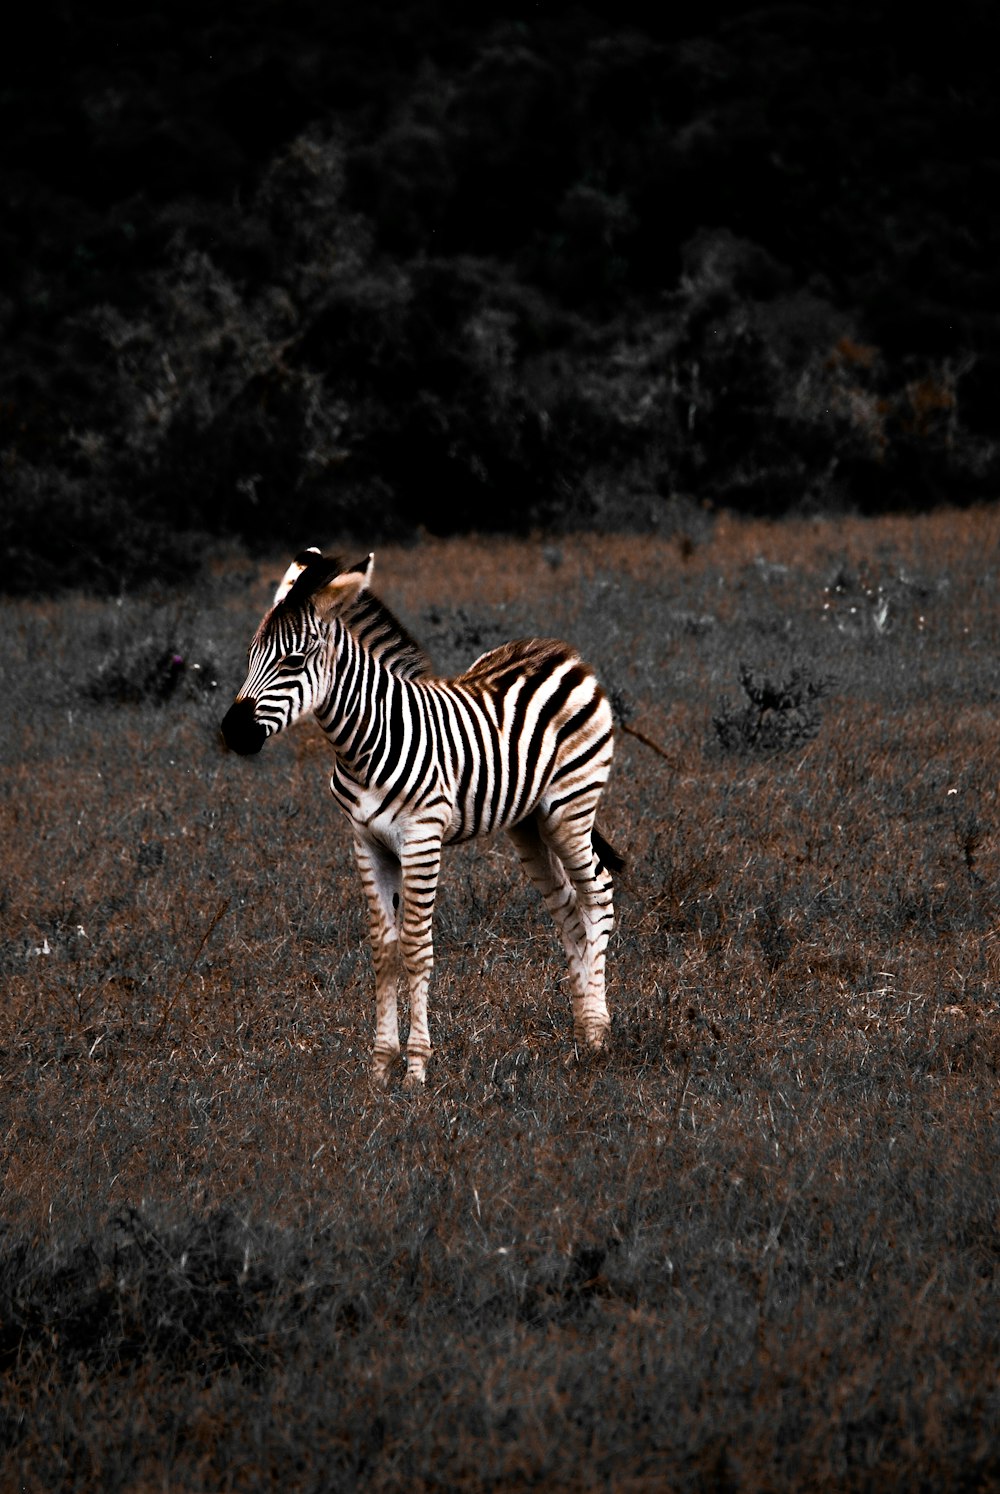 zebra walking on brown grass field during daytime